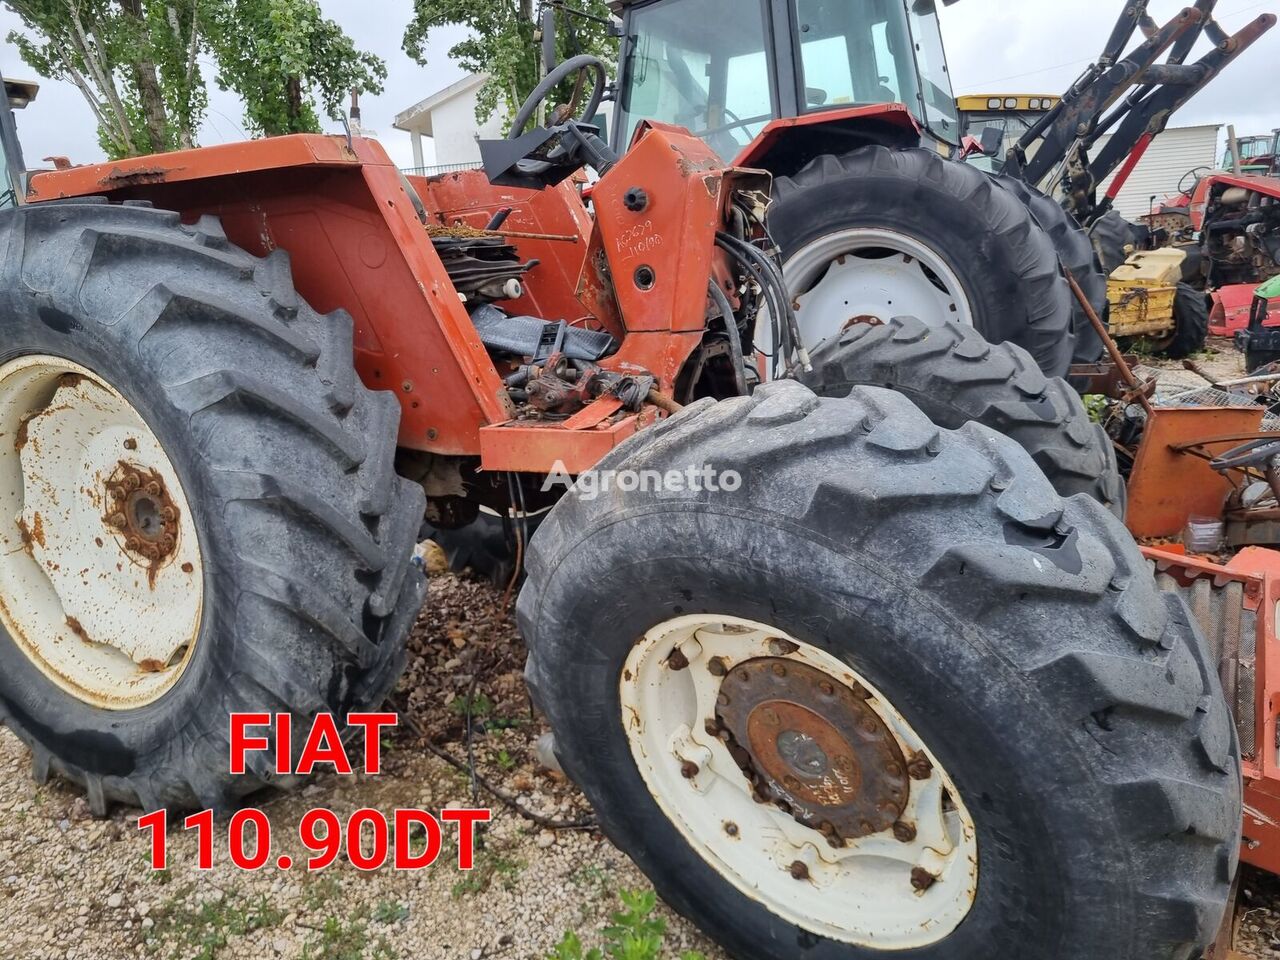 FIAT 110-90DT para peças wheel tractor for parts